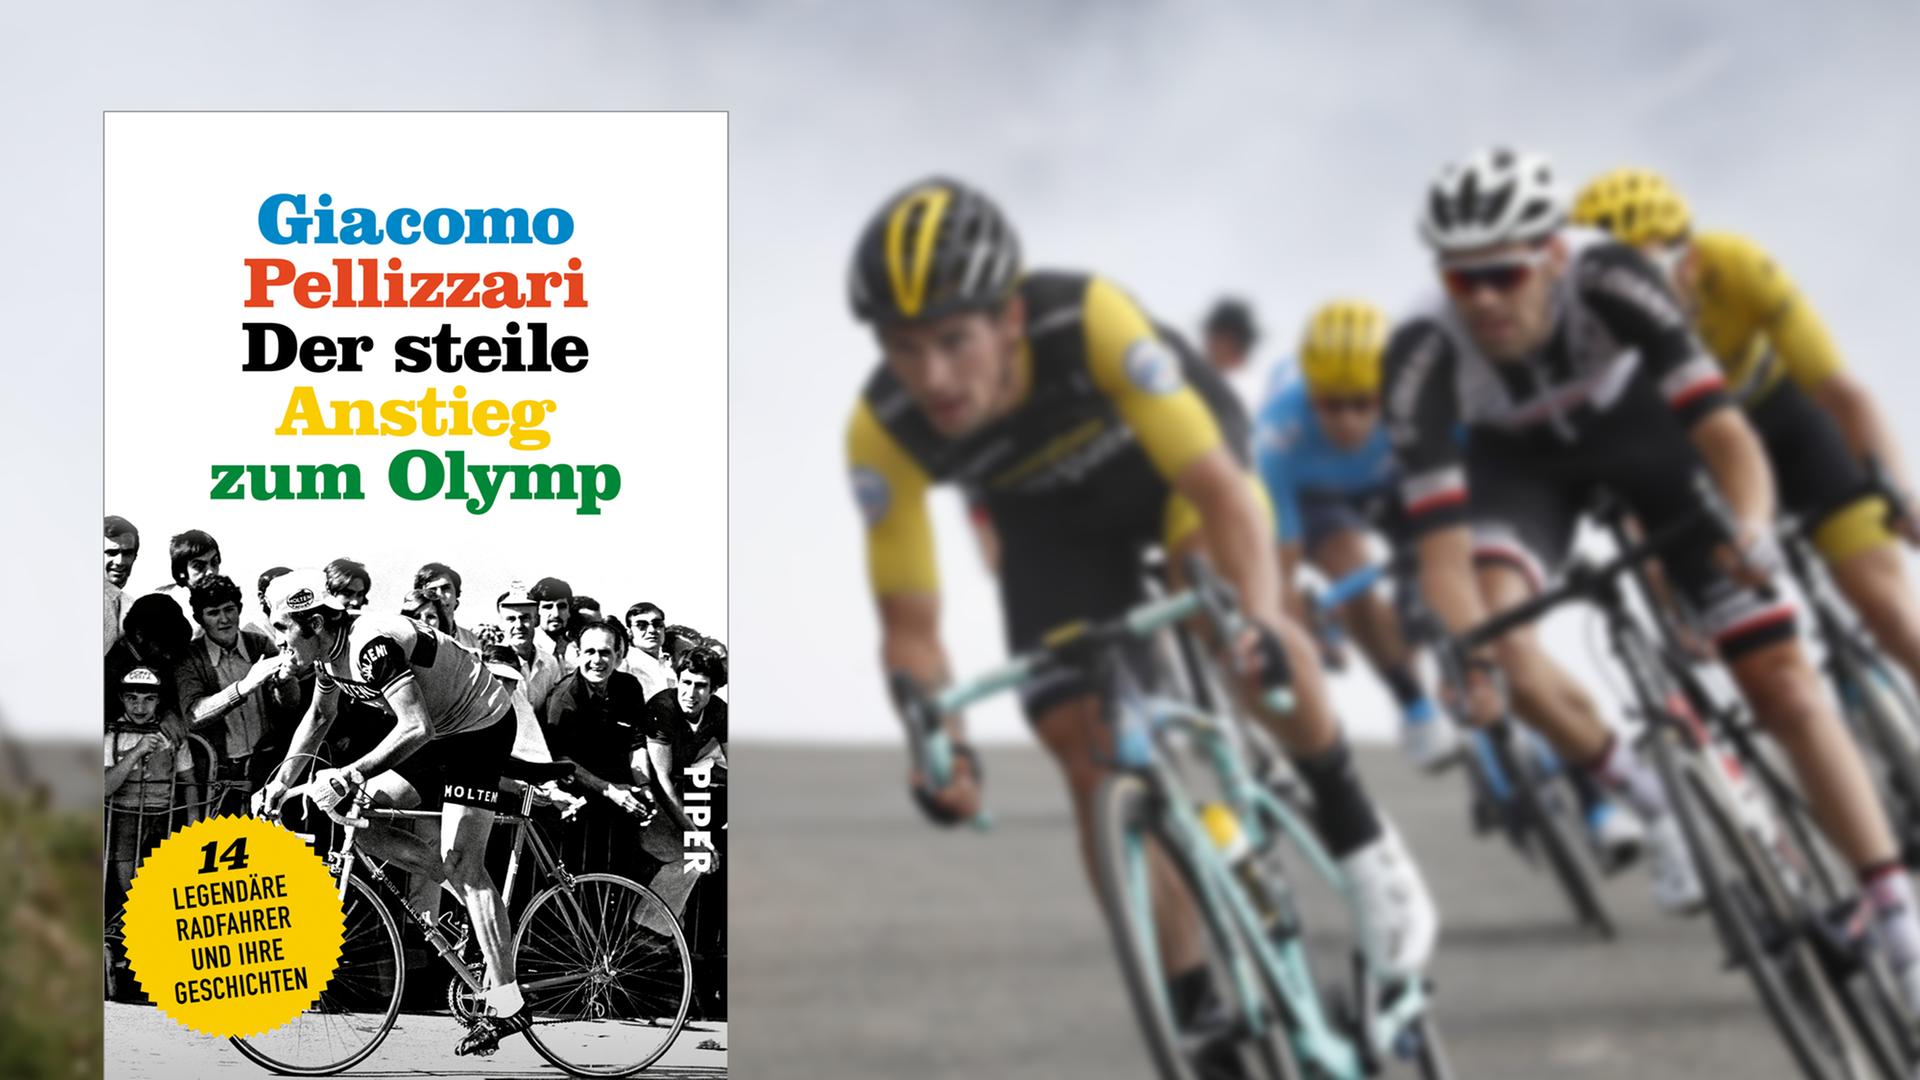 Buchcover: "Der steile Anstieg zum Olymp" von Giacomo Pellizzari